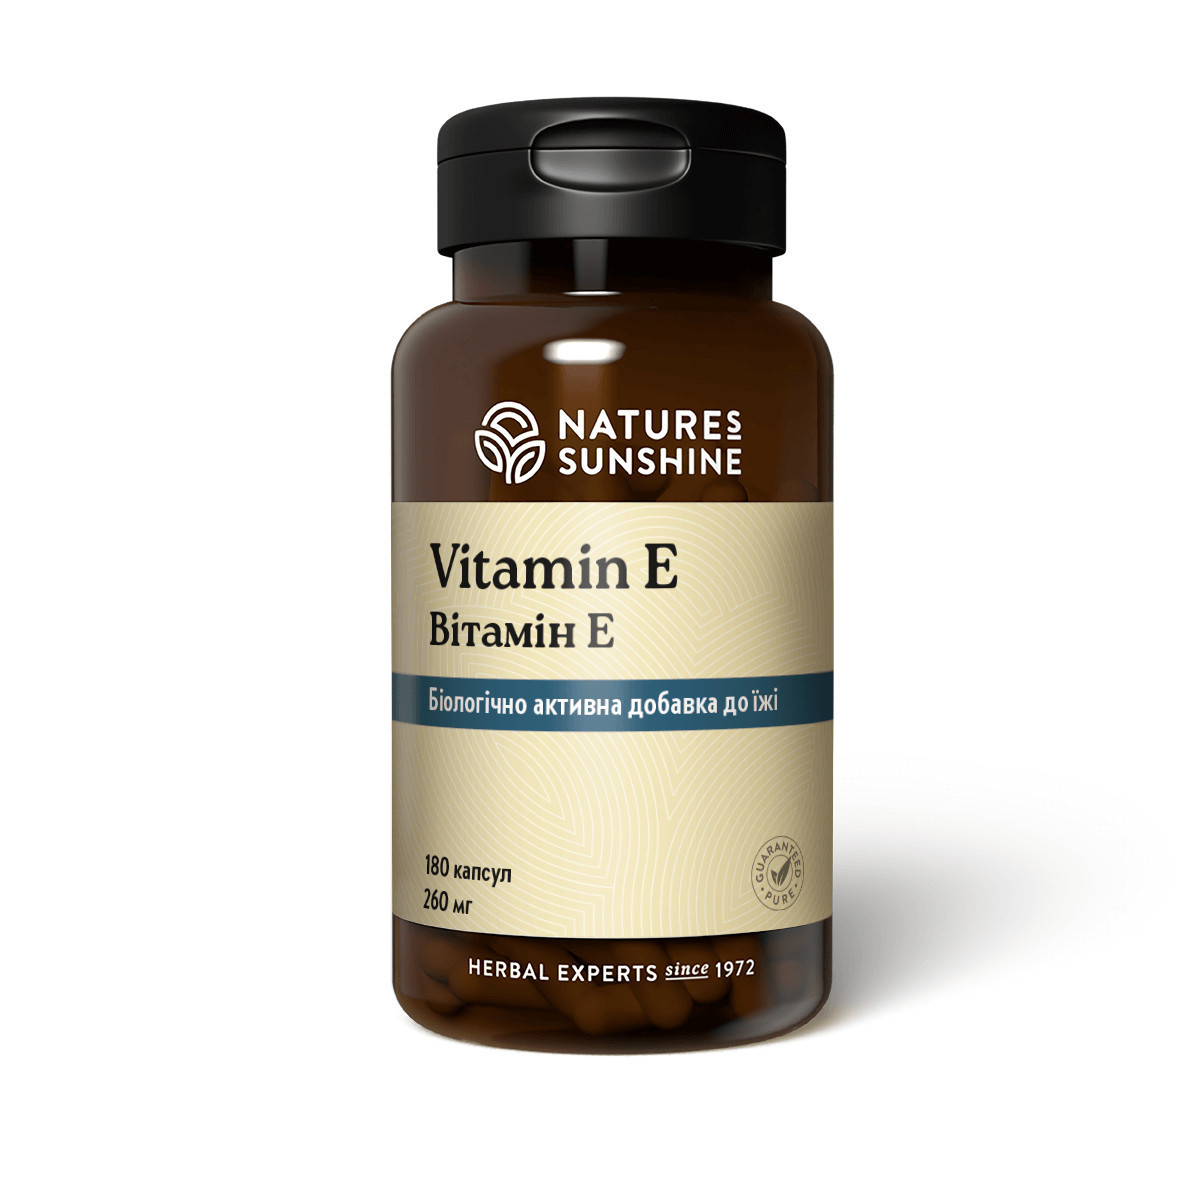 Вітамін E 100 МО, Vitamin E 100 МО, Nature's Sunshine Products, США, 180 капсул